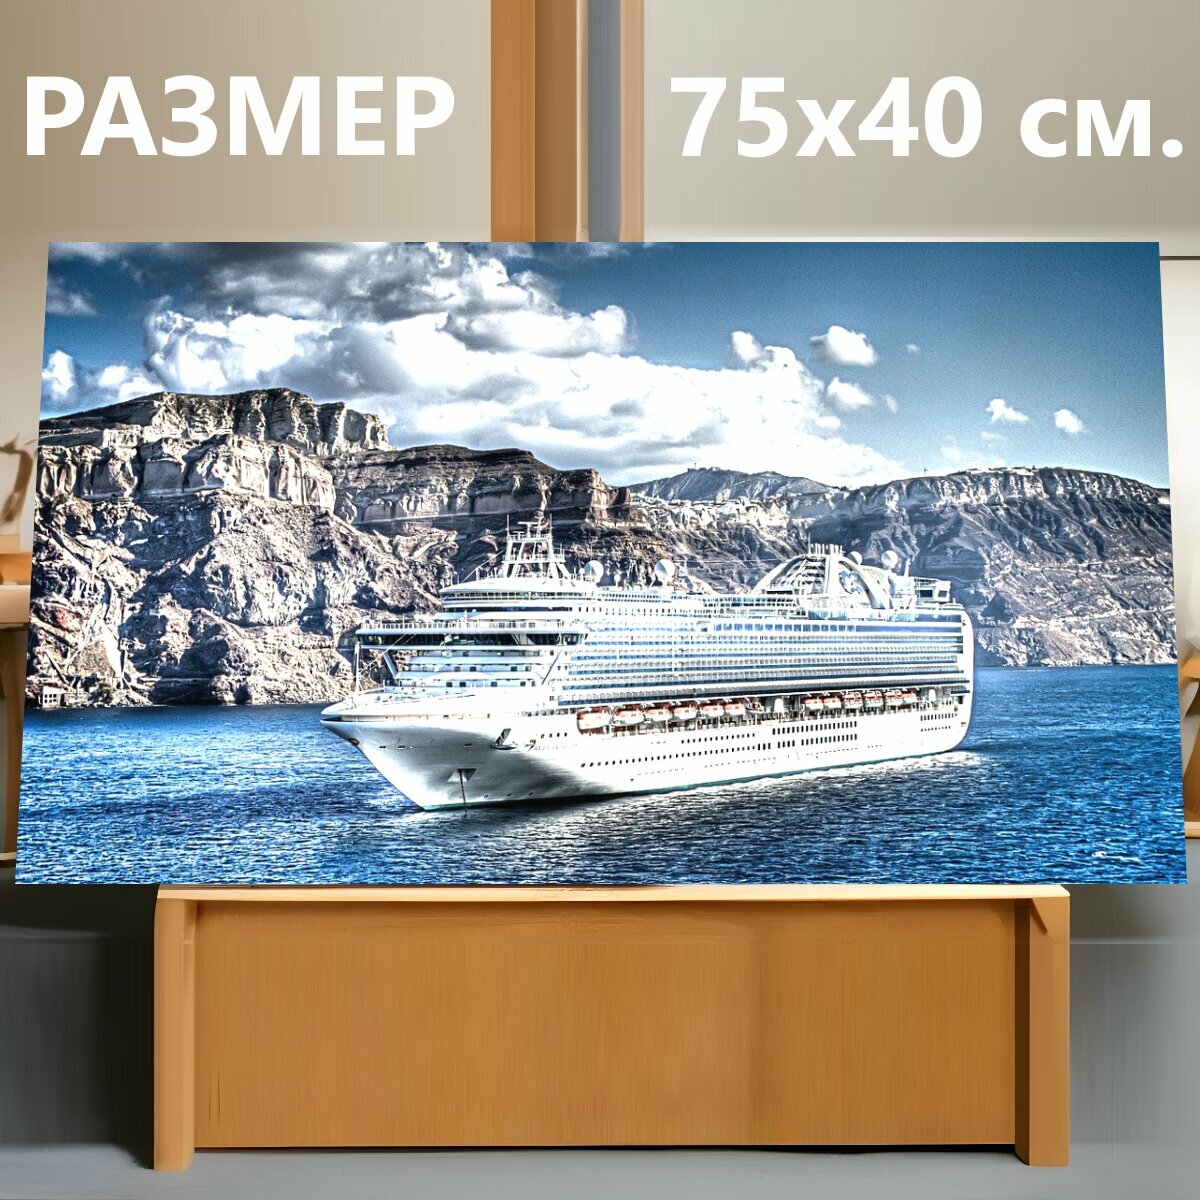 Картина на холсте "Круизное судно, средиземное море, океанский лайнер" на подрамнике 75х40 см. для интерьера